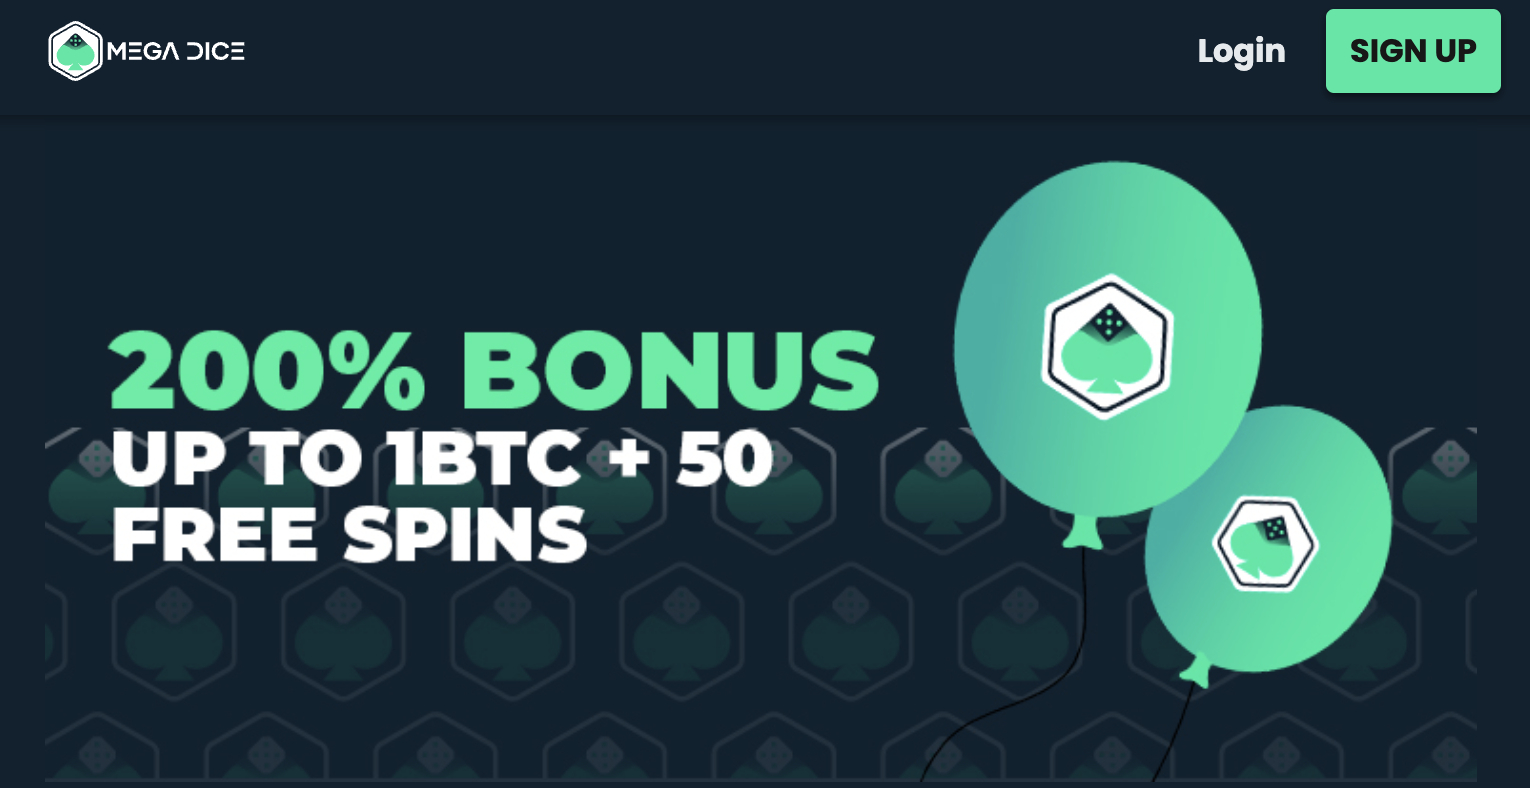 Mega Dice Casino 200% Bonus